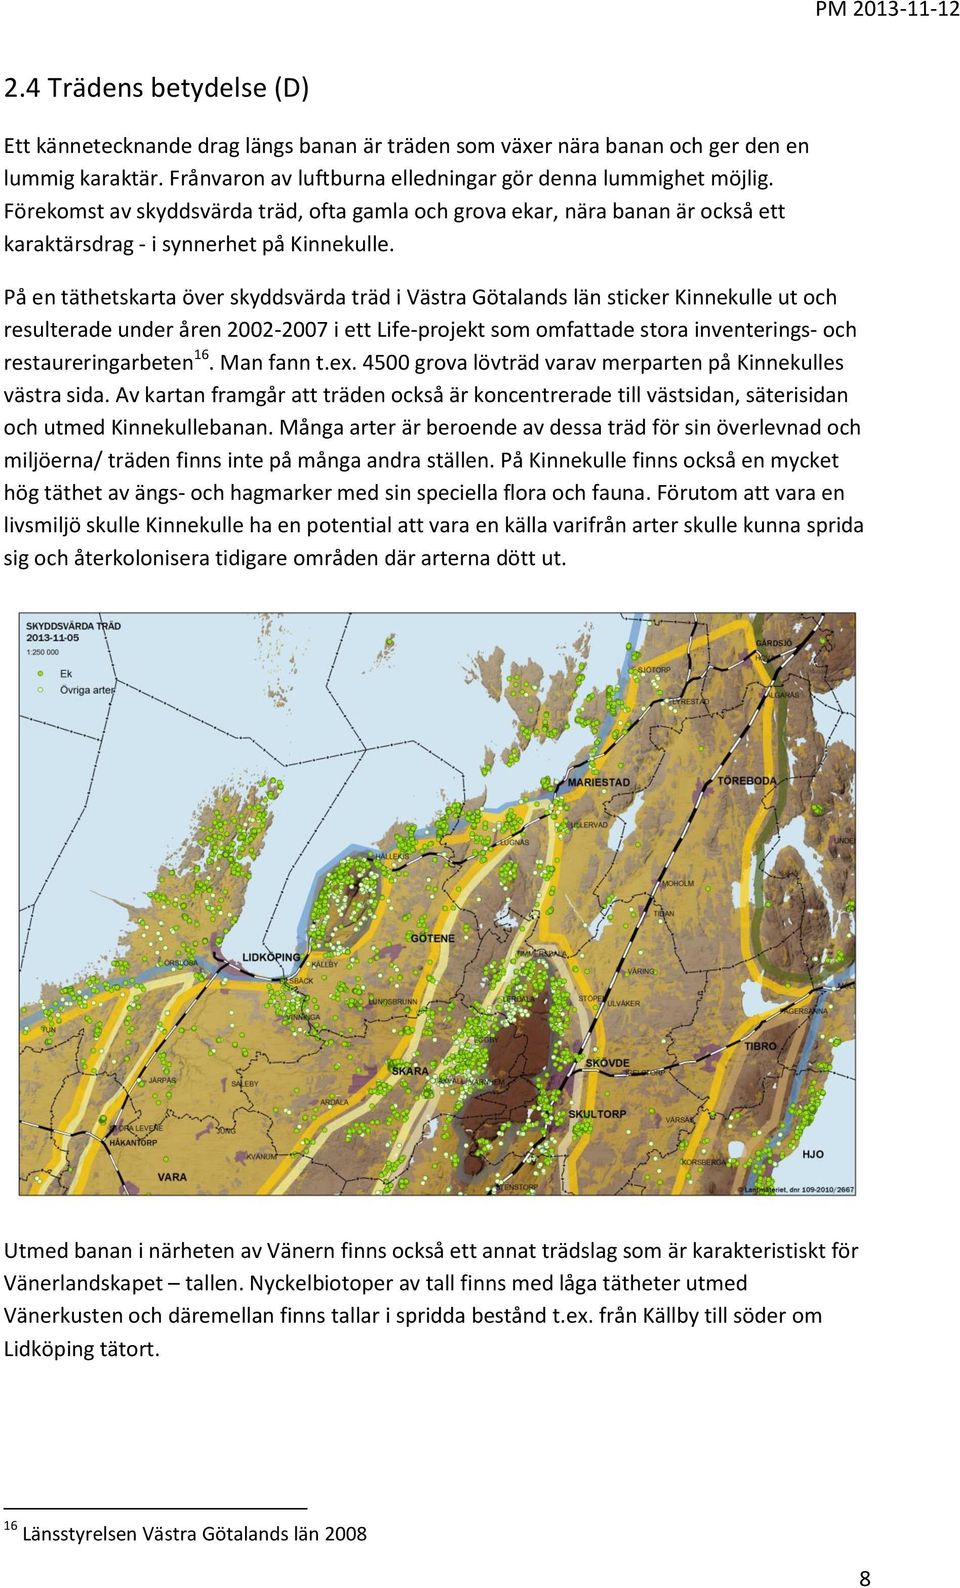 På en täthetskarta över skyddsvärda träd i Västra Götalands län sticker Kinnekulle ut och resulterade under åren 2002-2007 i ett Life-projekt som omfattade stora inventerings- och restaureringarbeten